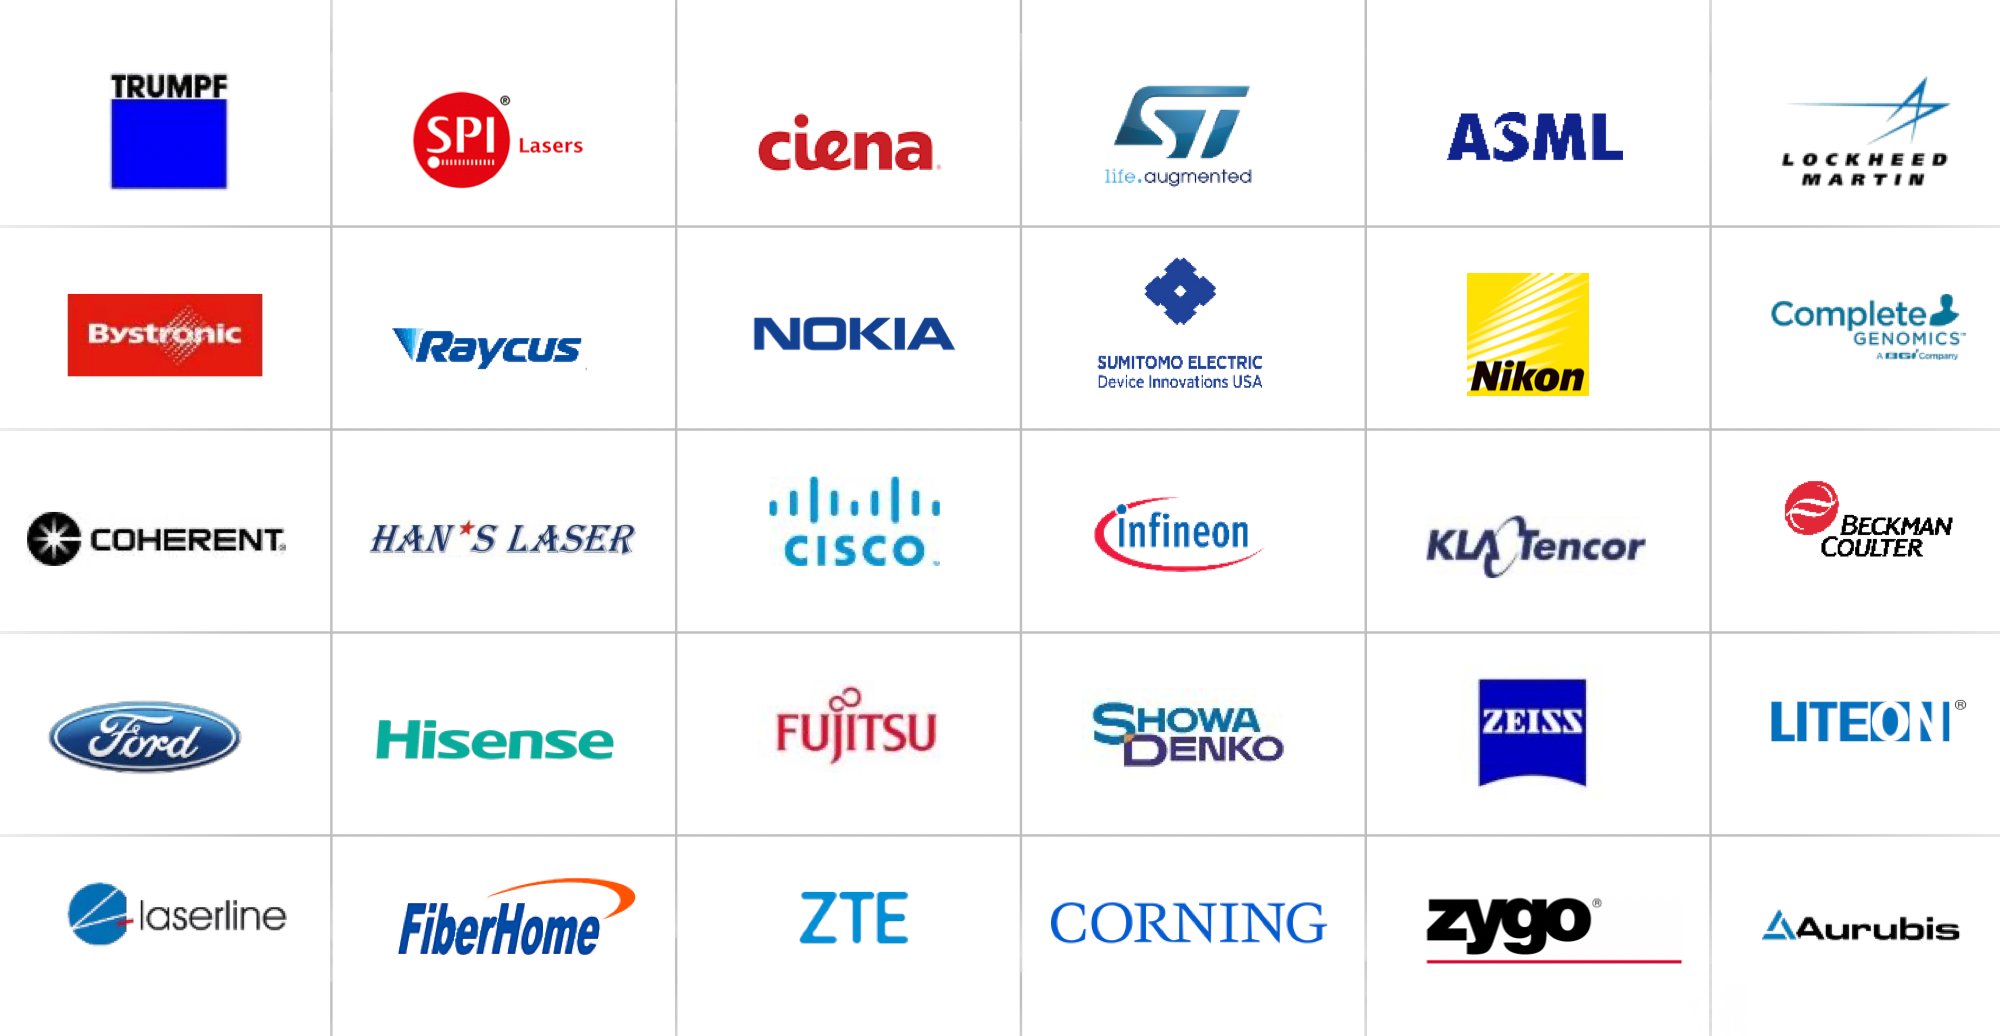 Логотипы клиентов компании. Источник: презентация компании, слайд 8